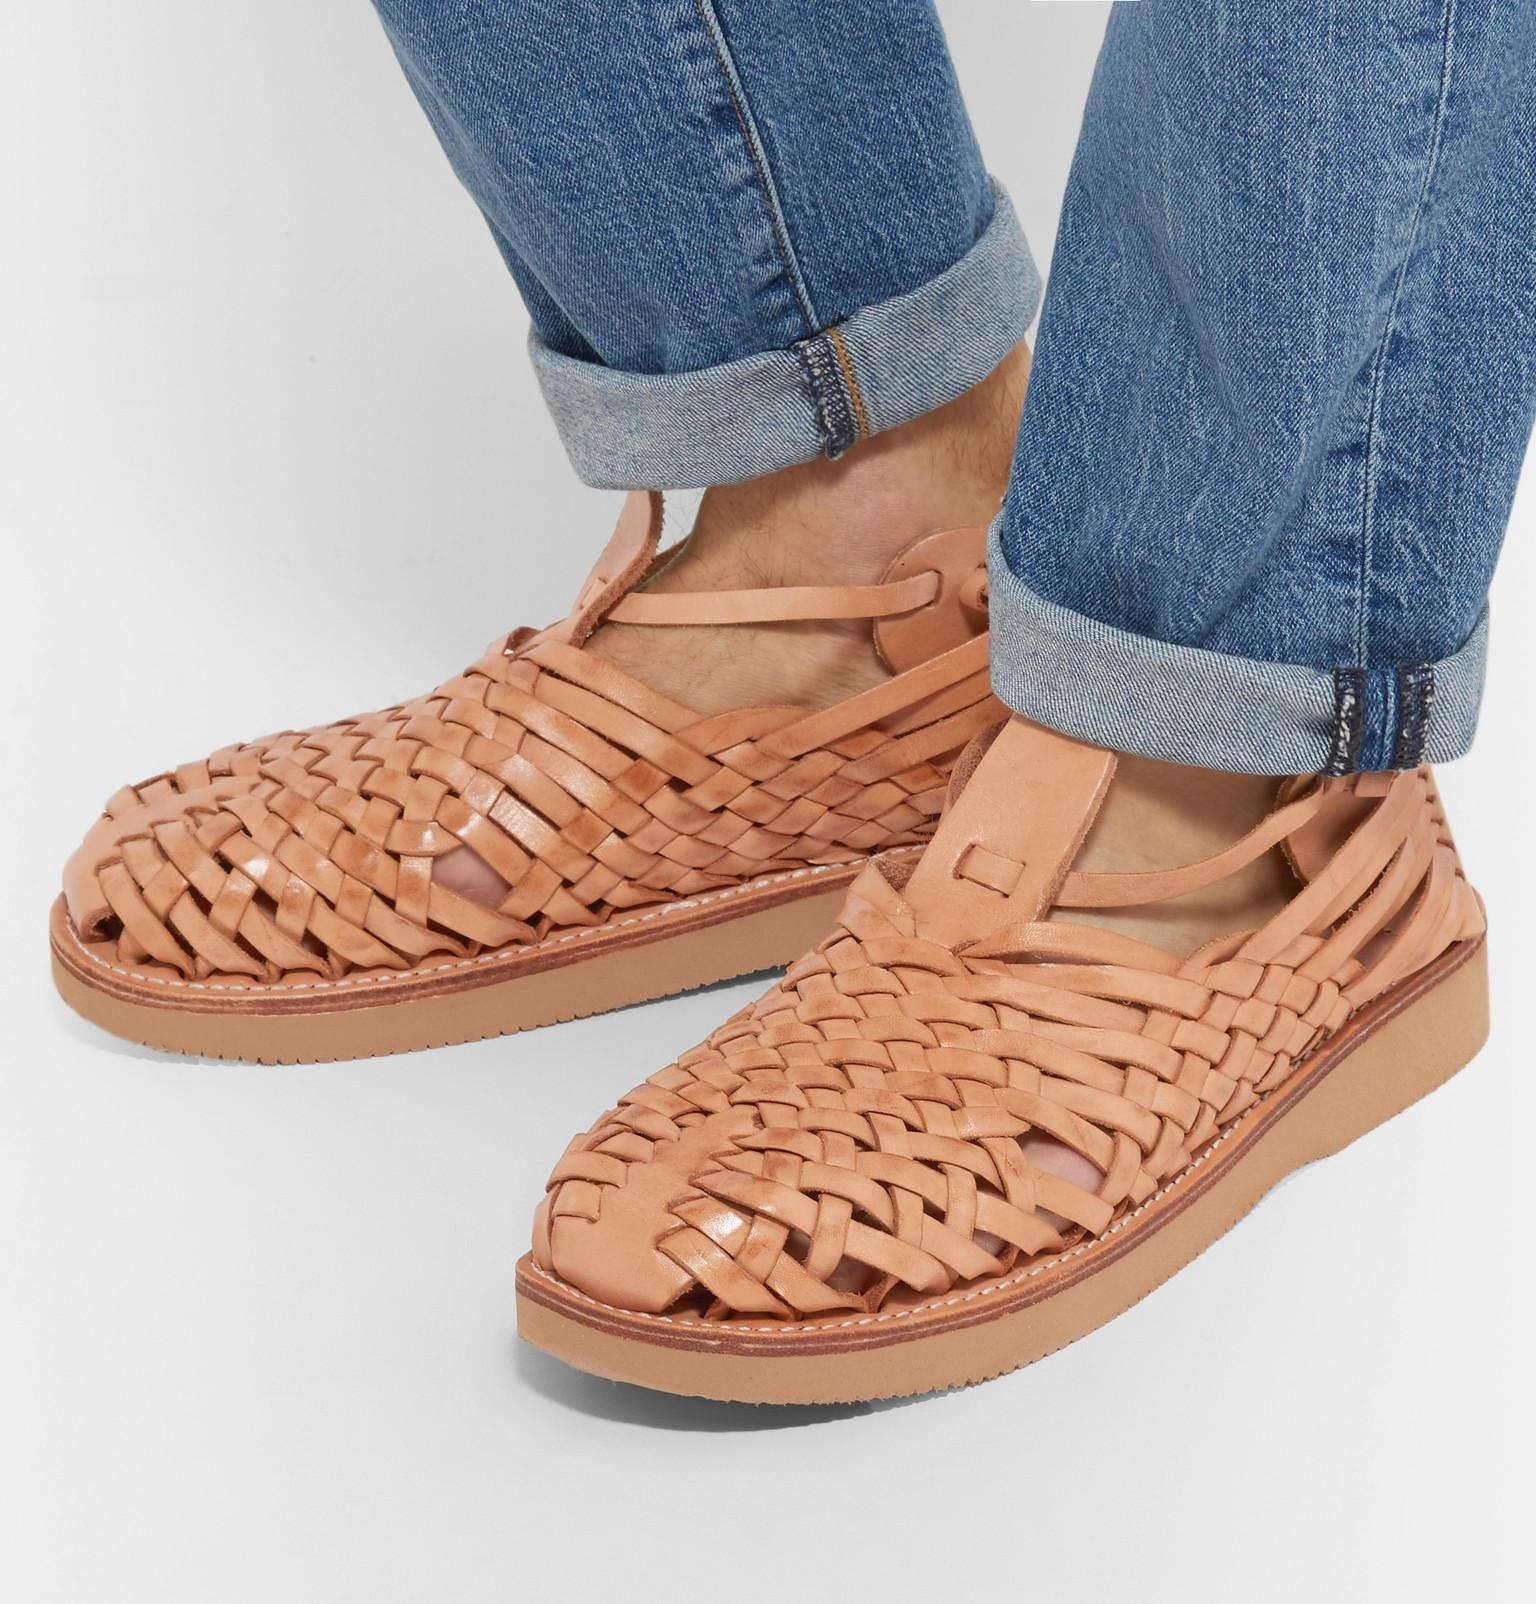 Yuketen Crus Woven Leather Sandals for Men - Lyst